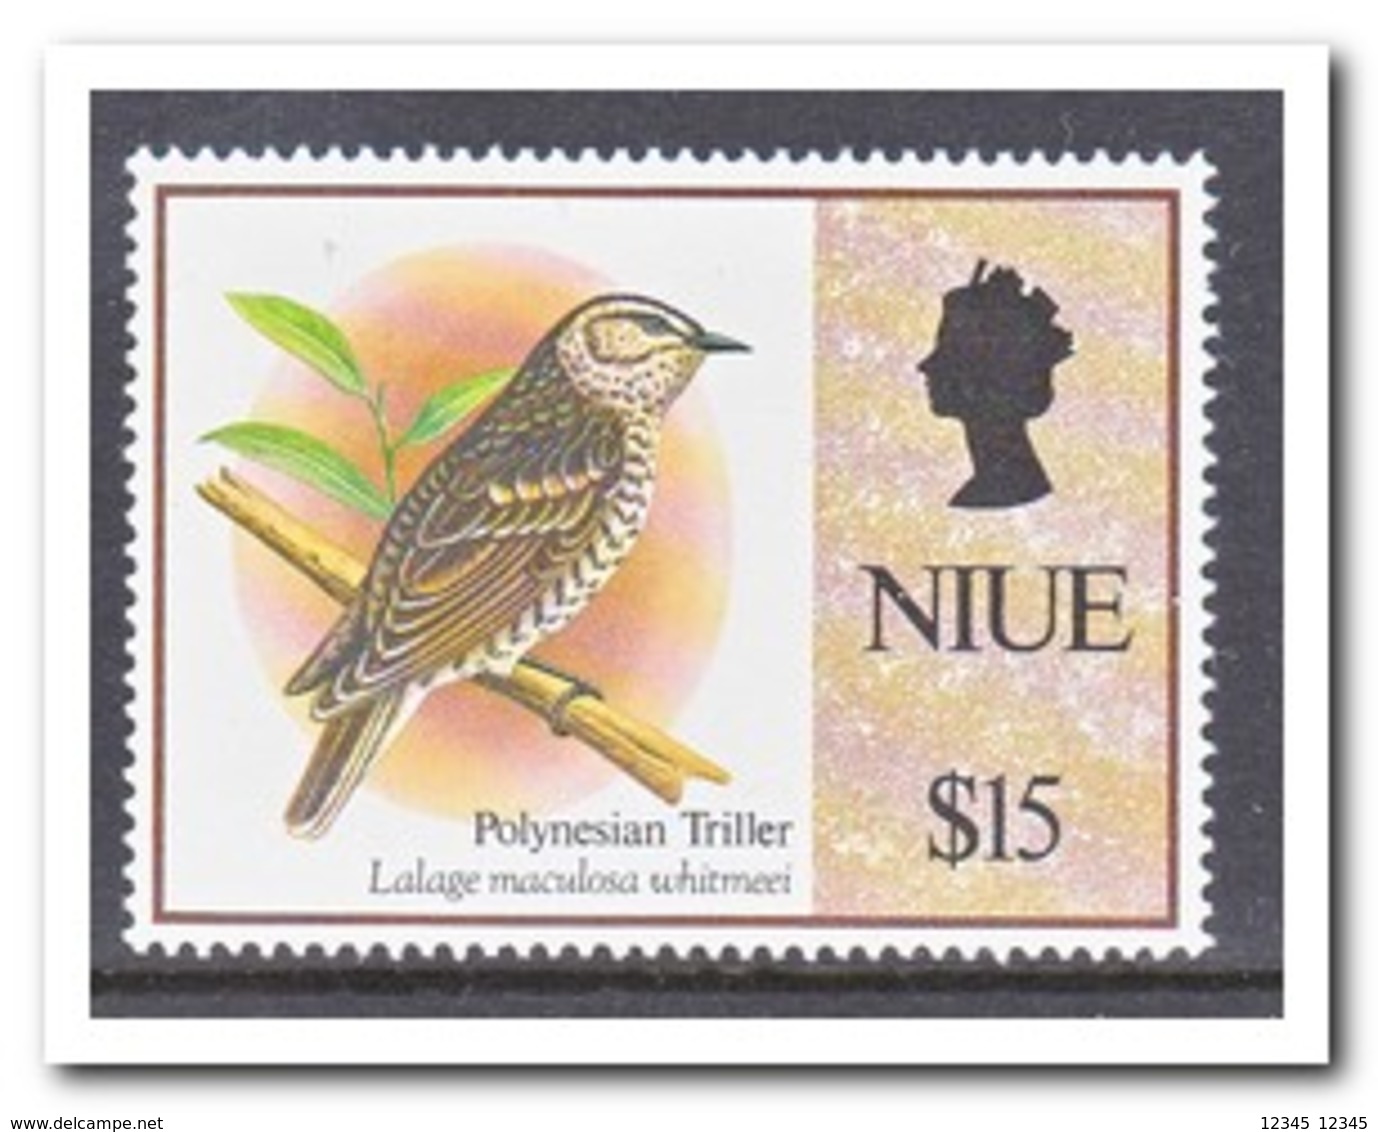 Niue 1992, Postfris MNH, Birds - Niue